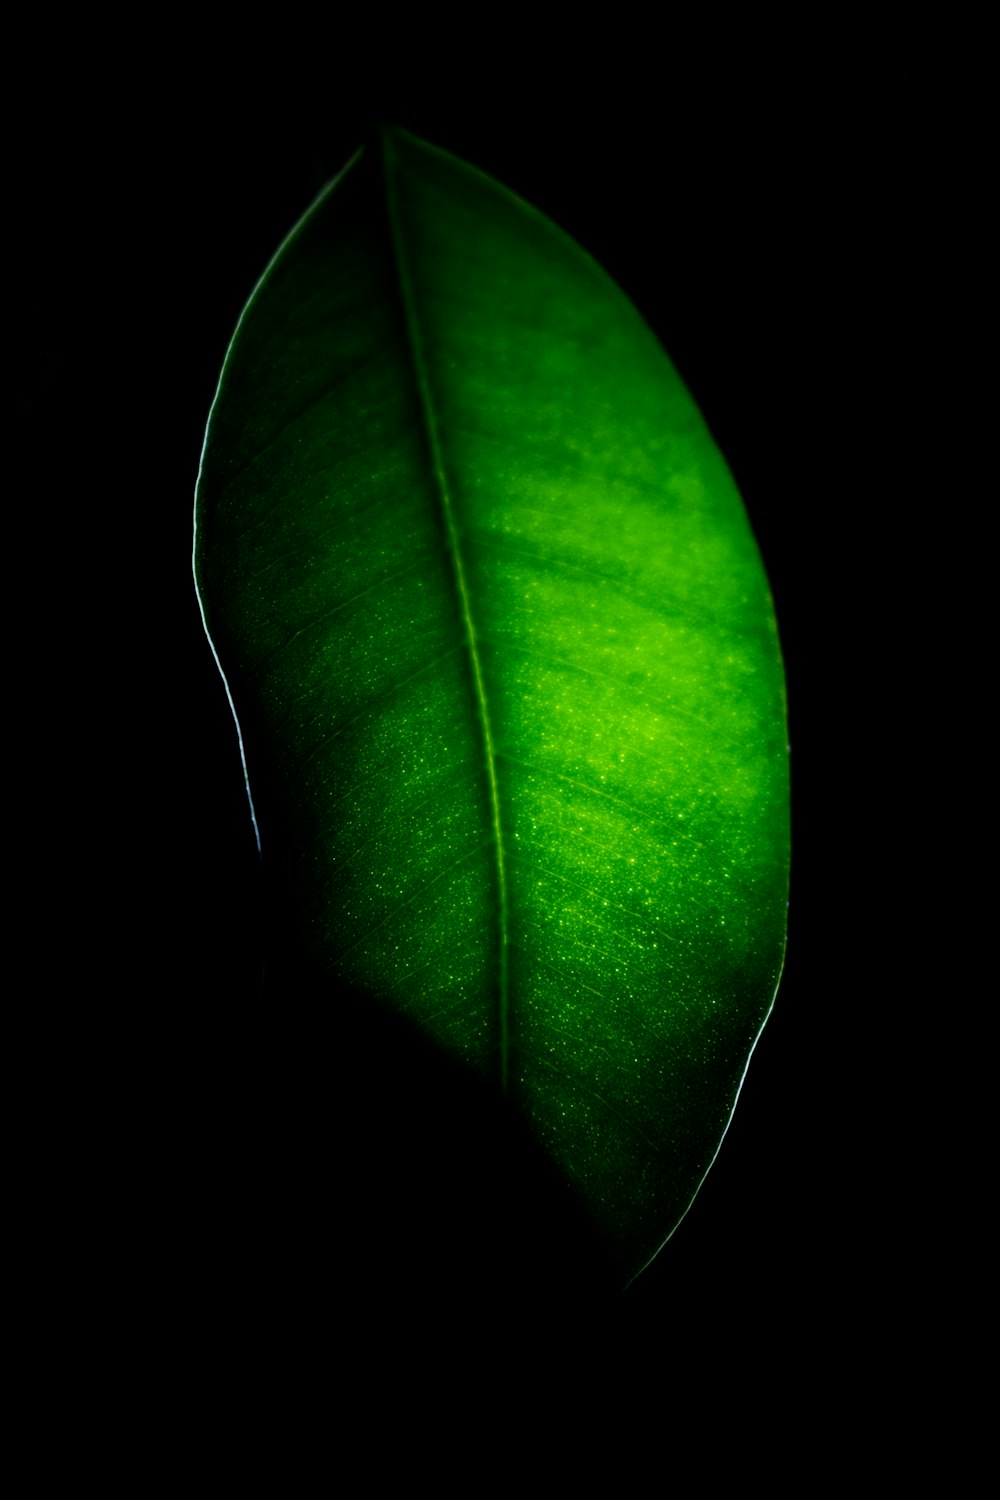 foglia verde in primo piano fotografia